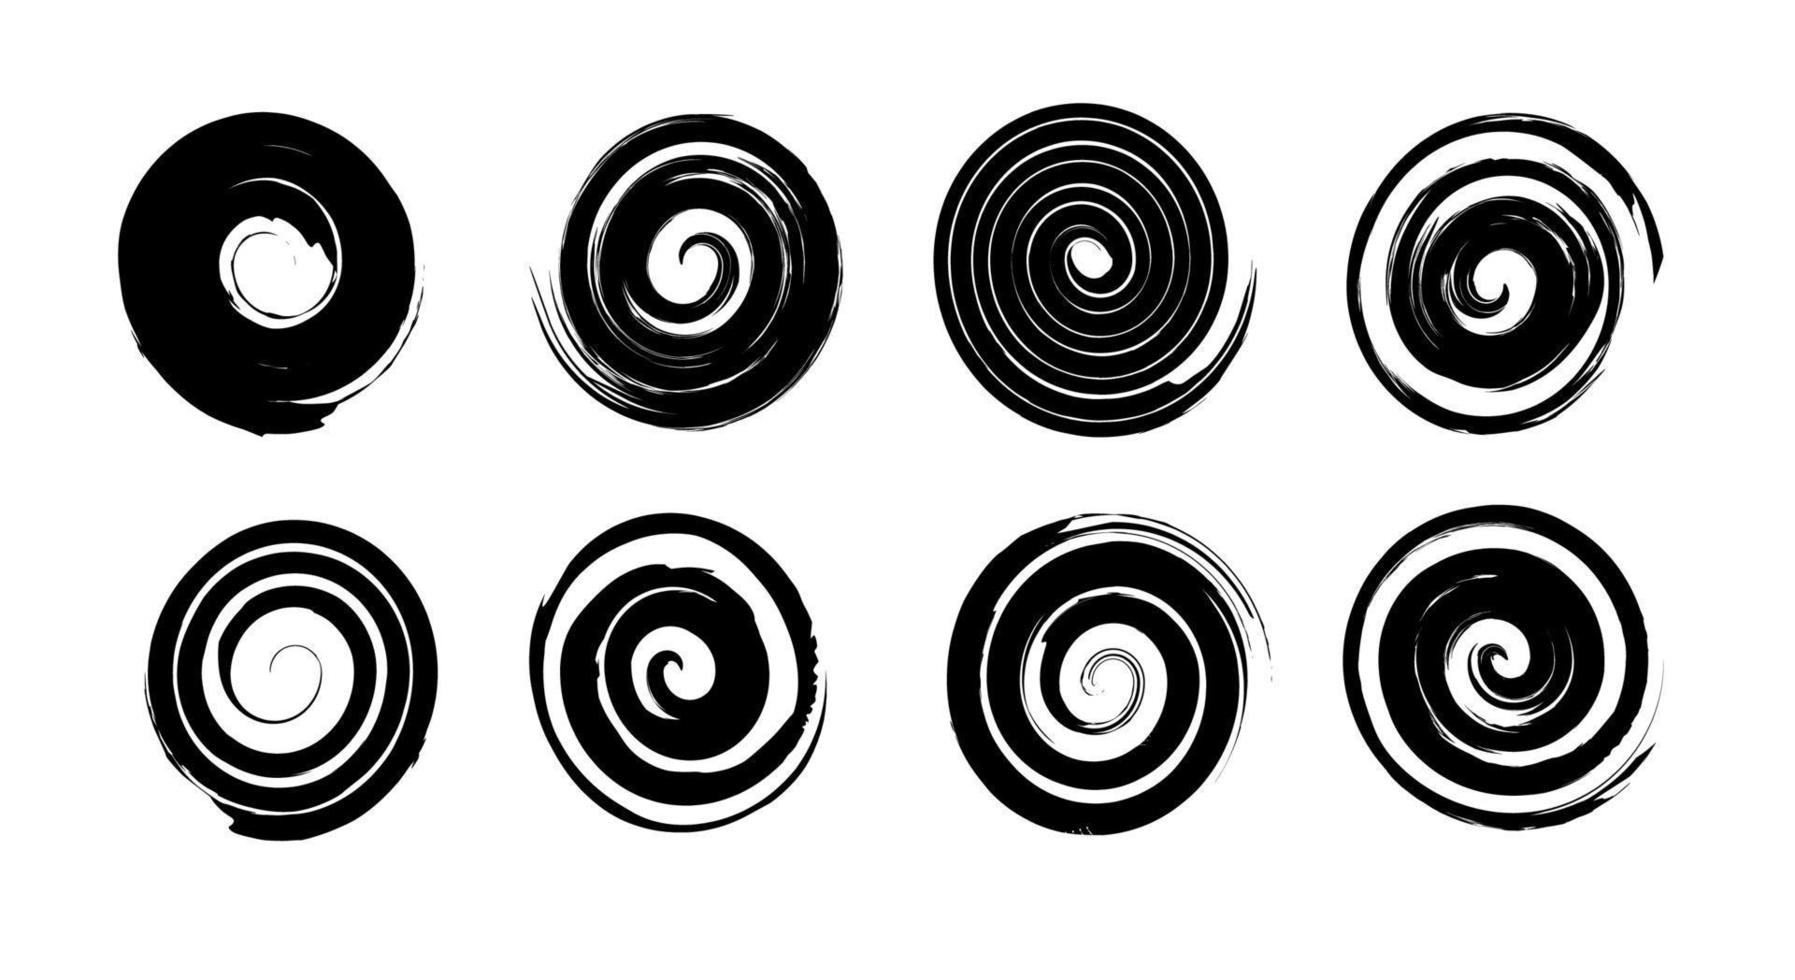 een reeks van grunge spiralen en krullen in zwart. vector elementen voor ontwerp ontwerp. universeel symbolen en elementen.